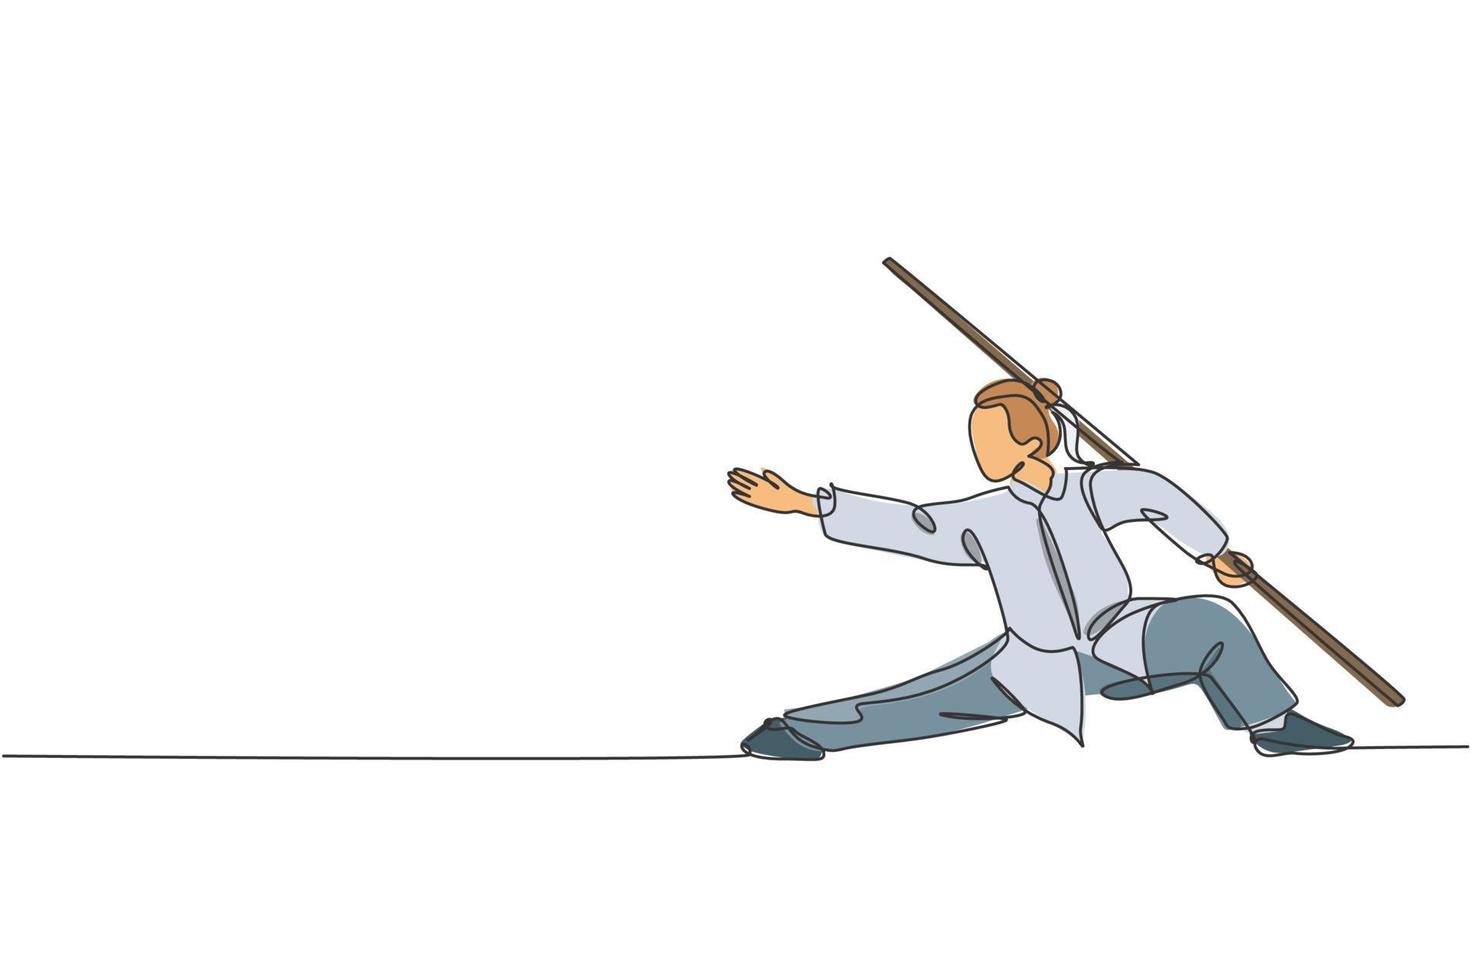 een doorlopende lijntekening van jonge wushu-meestervrouw, kungfu-krijger in kimono met lange staf op training. vechtsport sport wedstrijd concept. dynamische enkele lijn tekenen ontwerp vectorillustratie vector